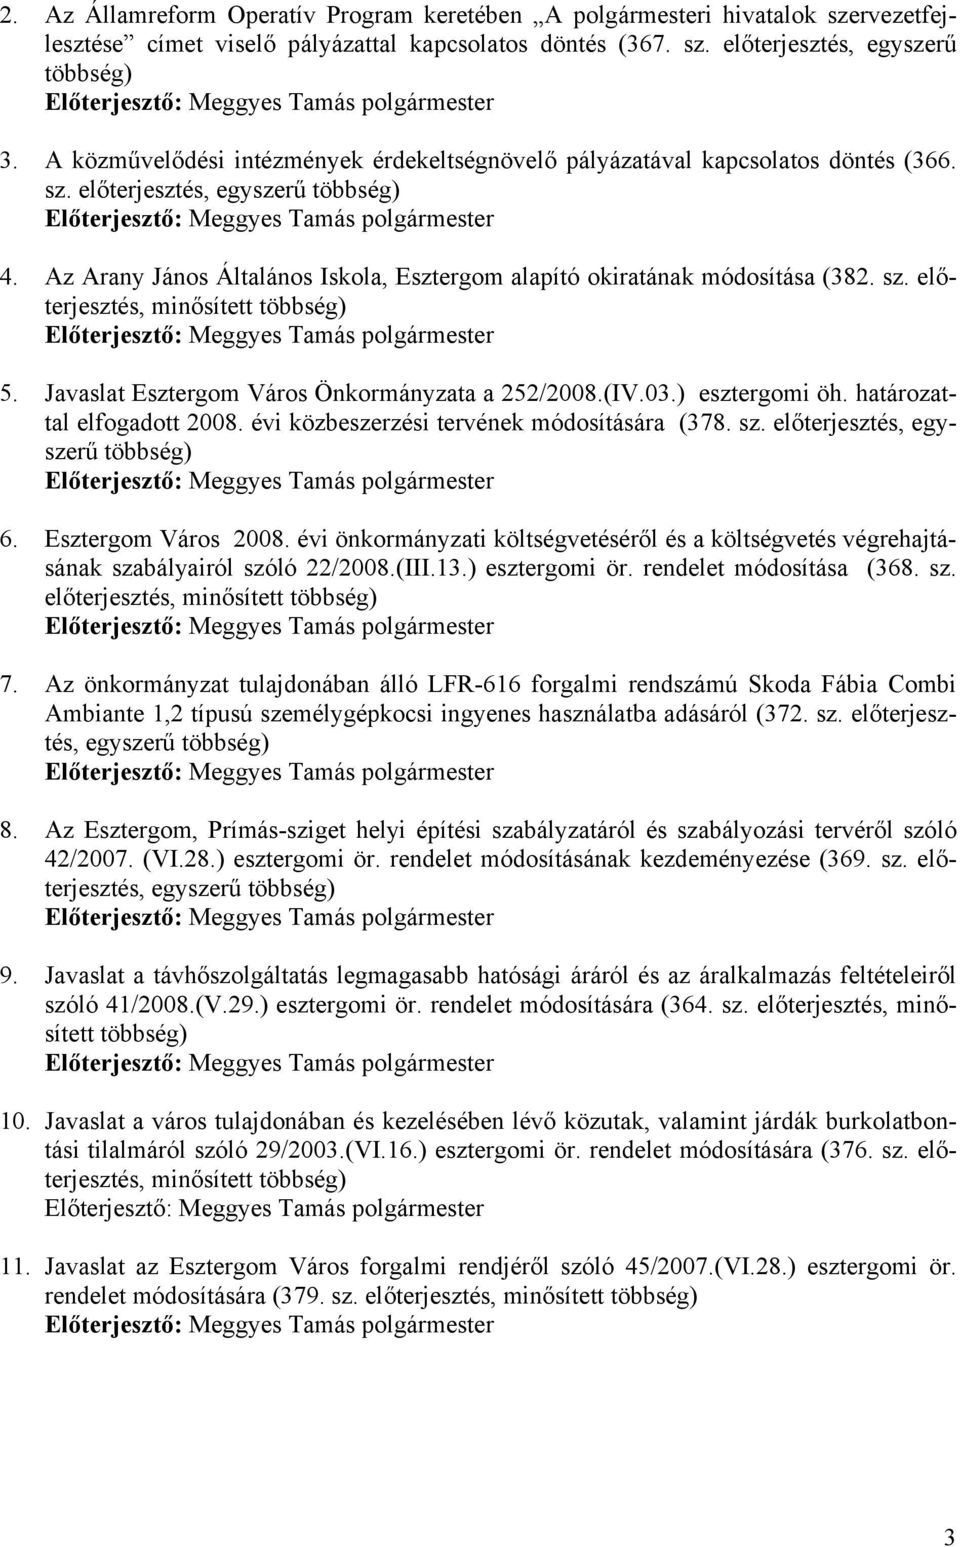 Az Arany János Általános Iskola, Esztergom alapító okiratának módosítása (382. sz. előterjesztés, minősített többség) 5. Javaslat Esztergom Város Önkormányzata a 252/2008.(IV.03.) esztergomi öh.